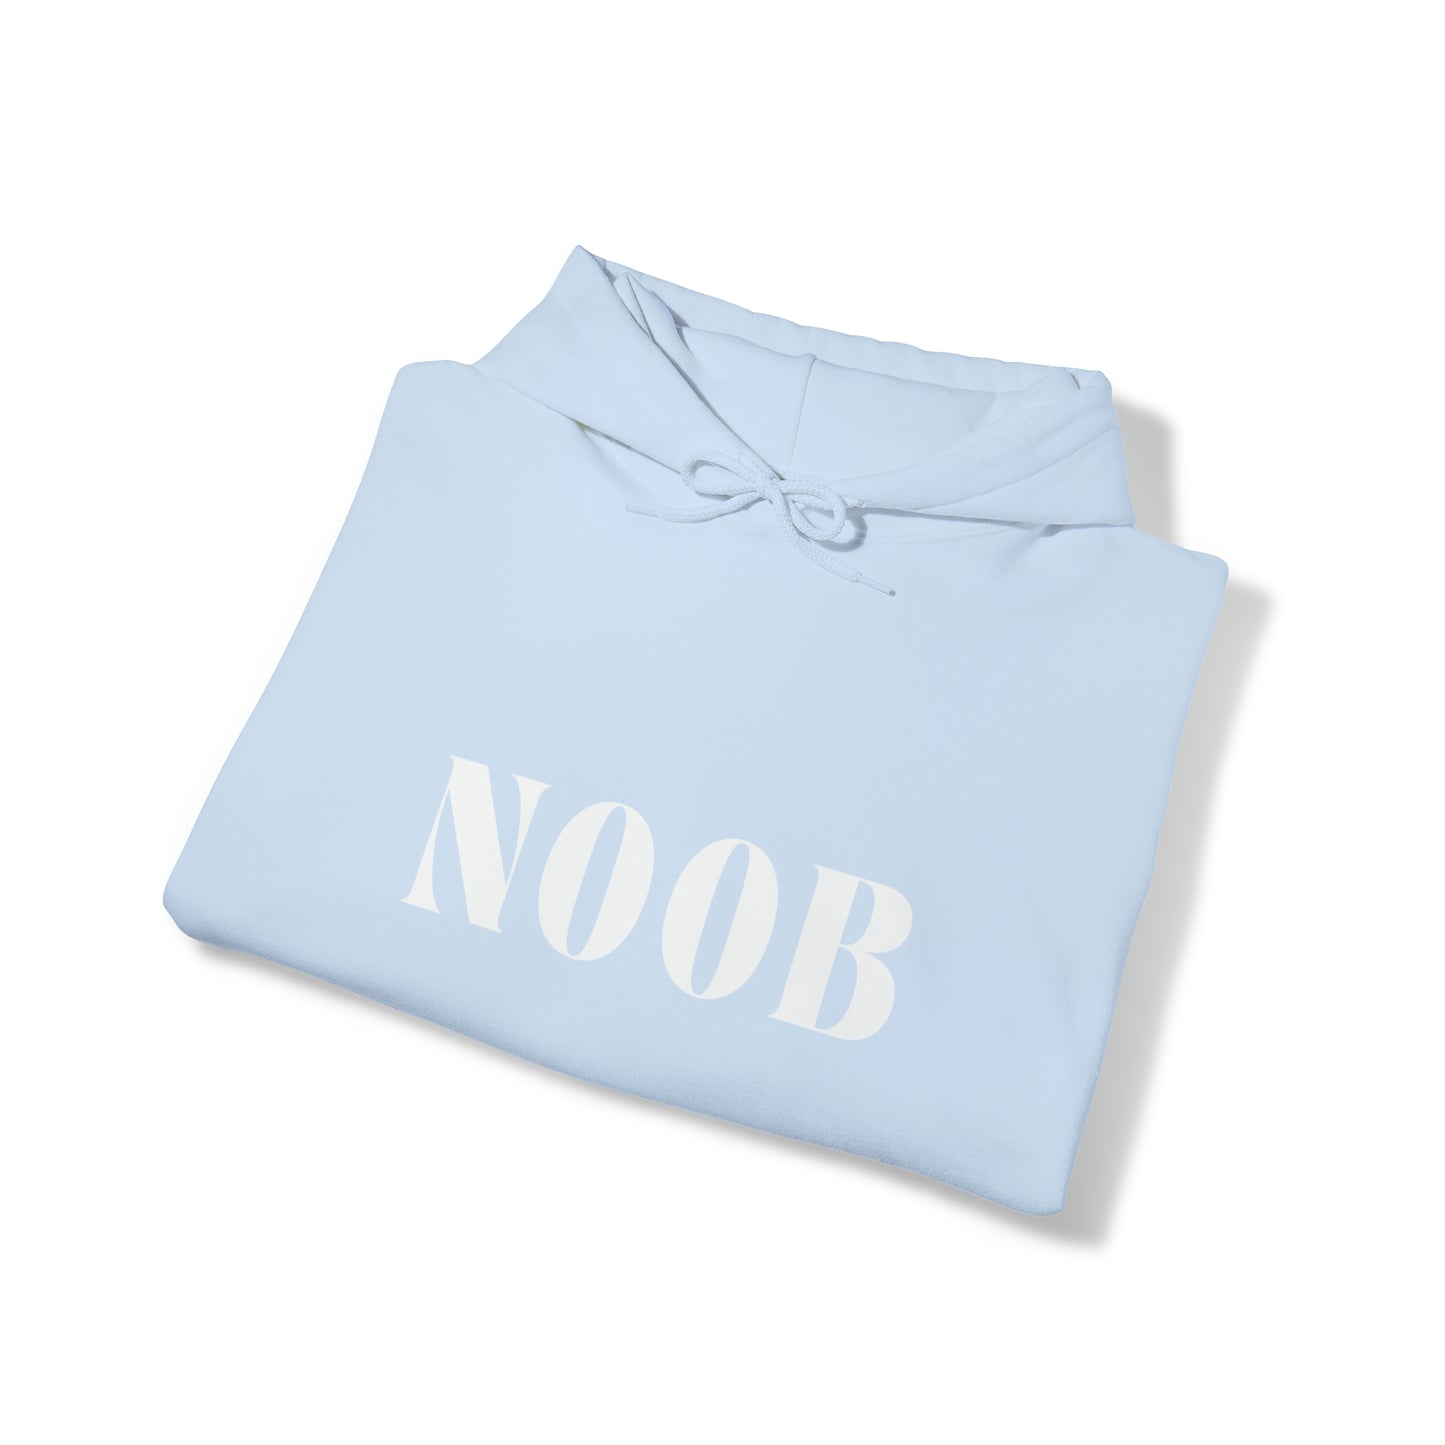   Noob Hoodie from HoodySZN.com